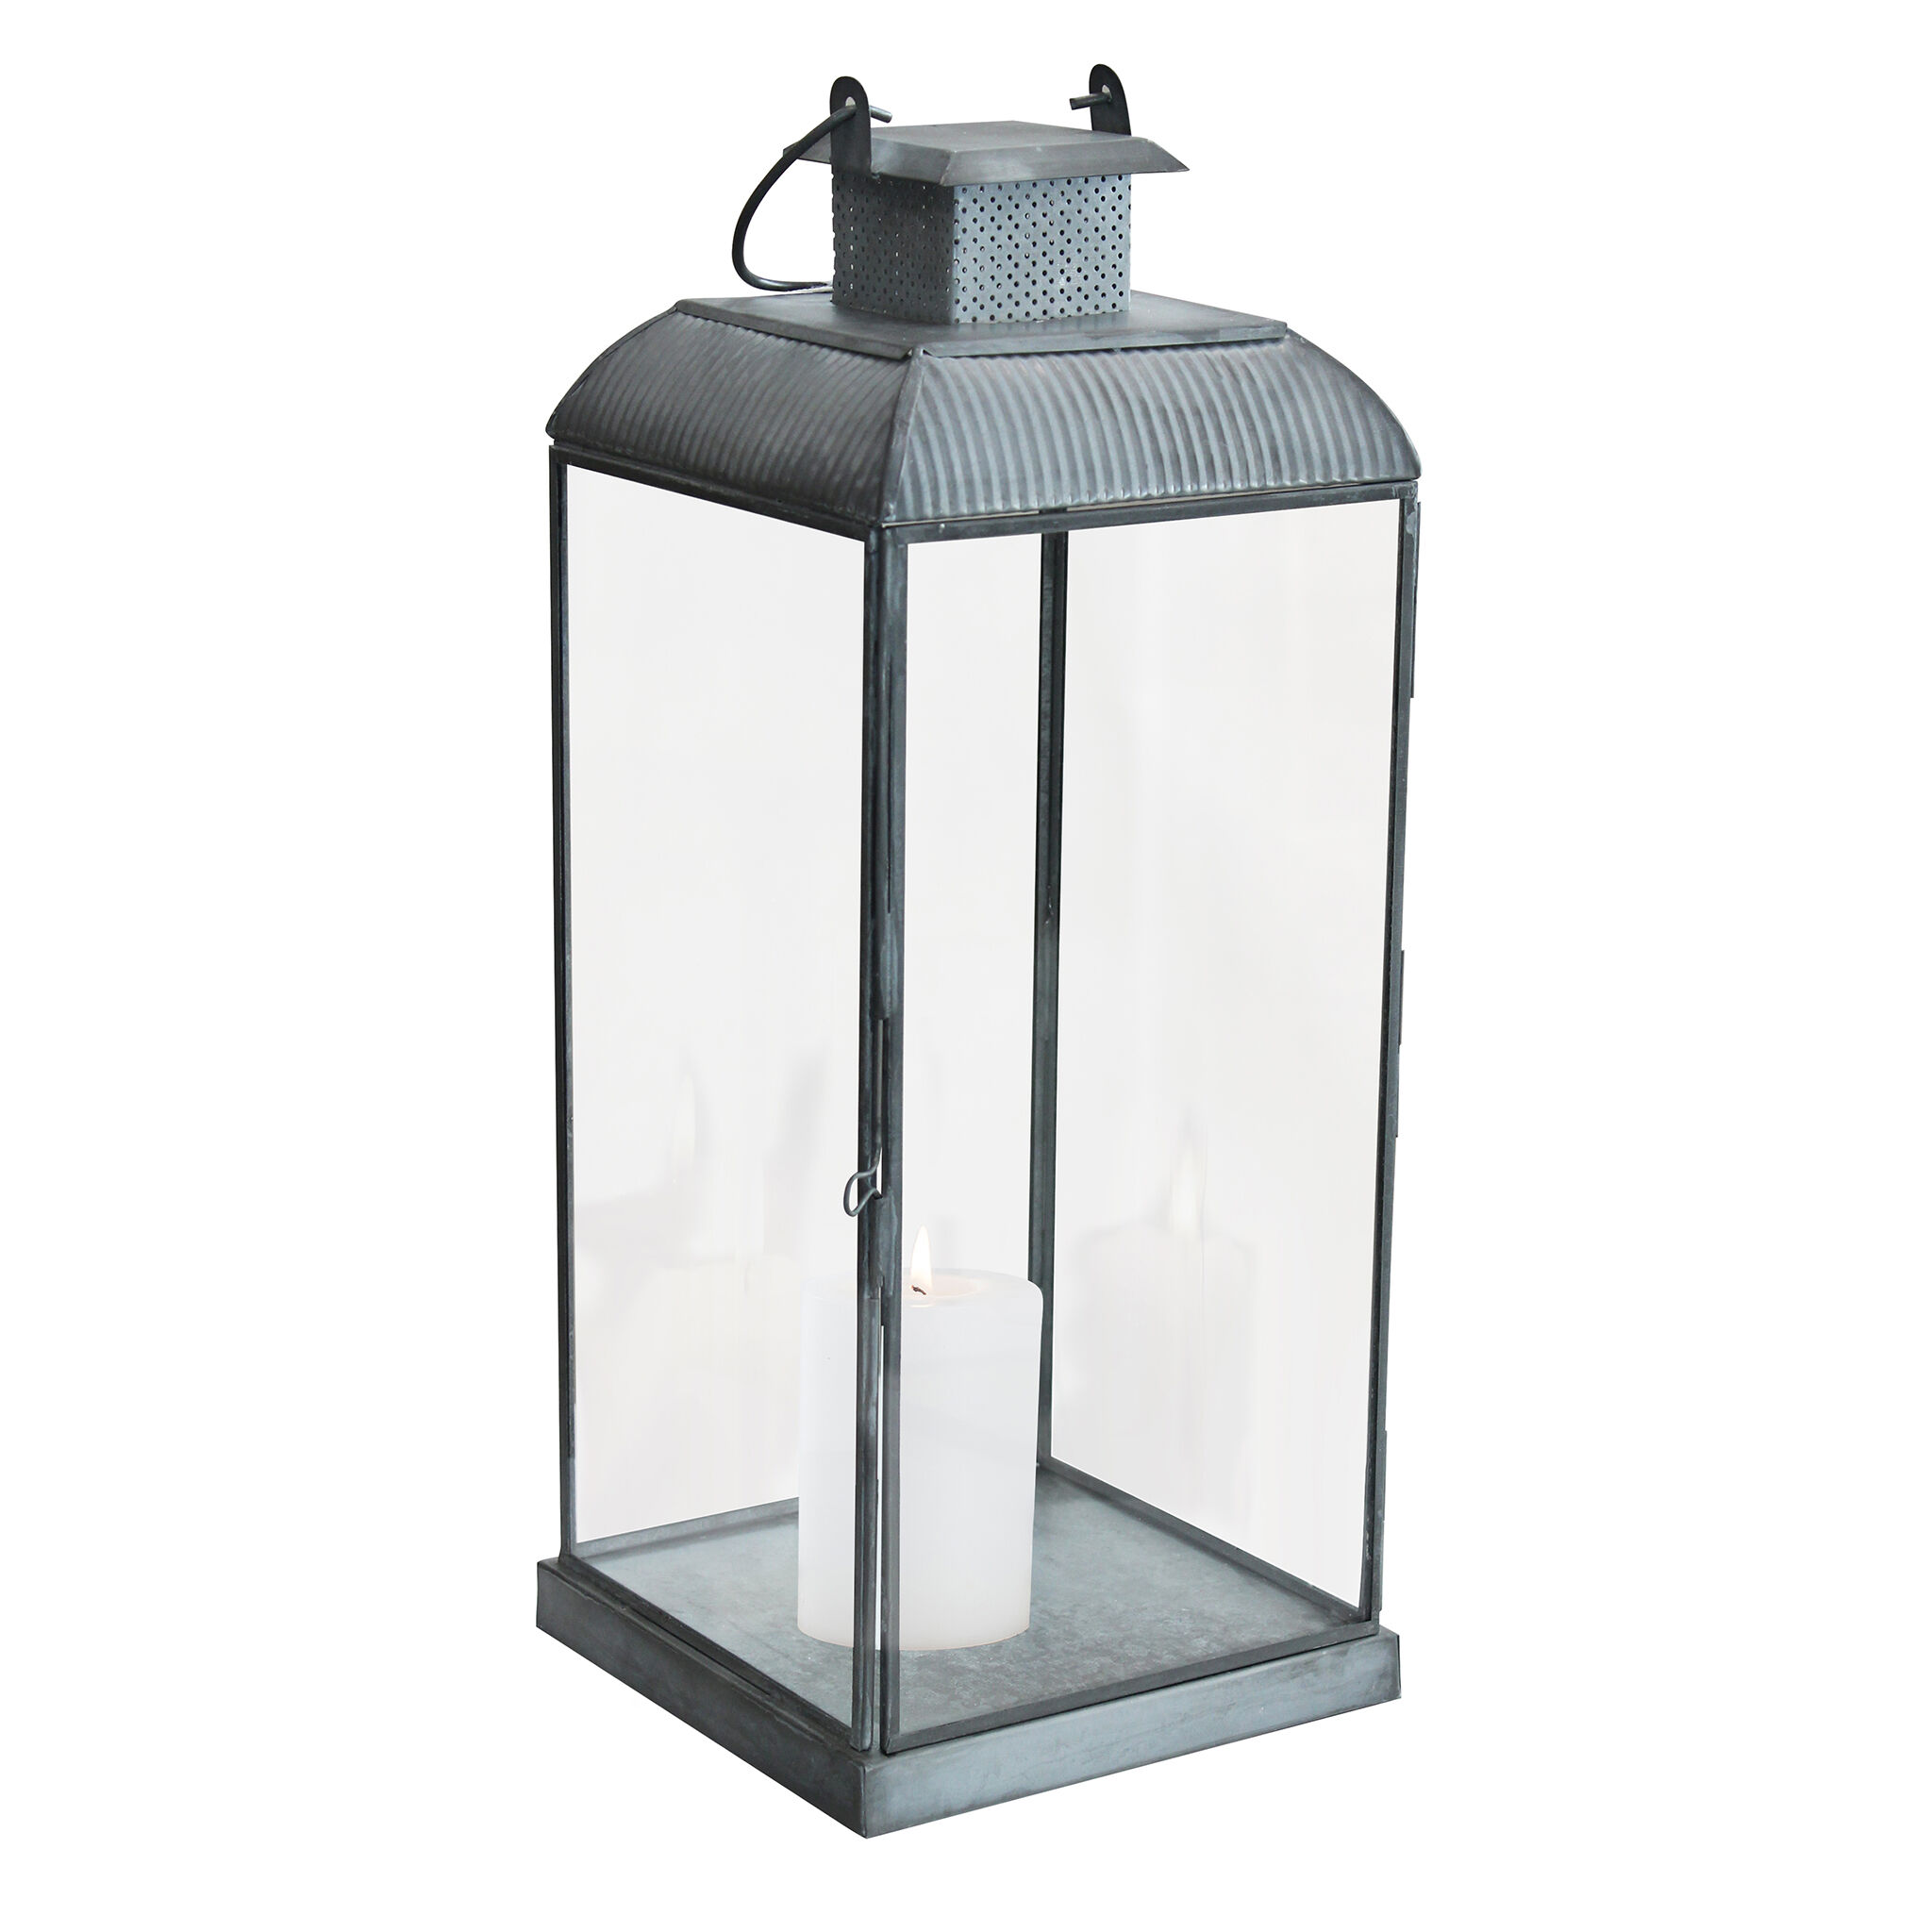 Milani Home lanterna in vetro di design moderno per giardino cm 17,5 x 17,5 x 42 h Grigio 17.5 x 42 x 17.5 cm